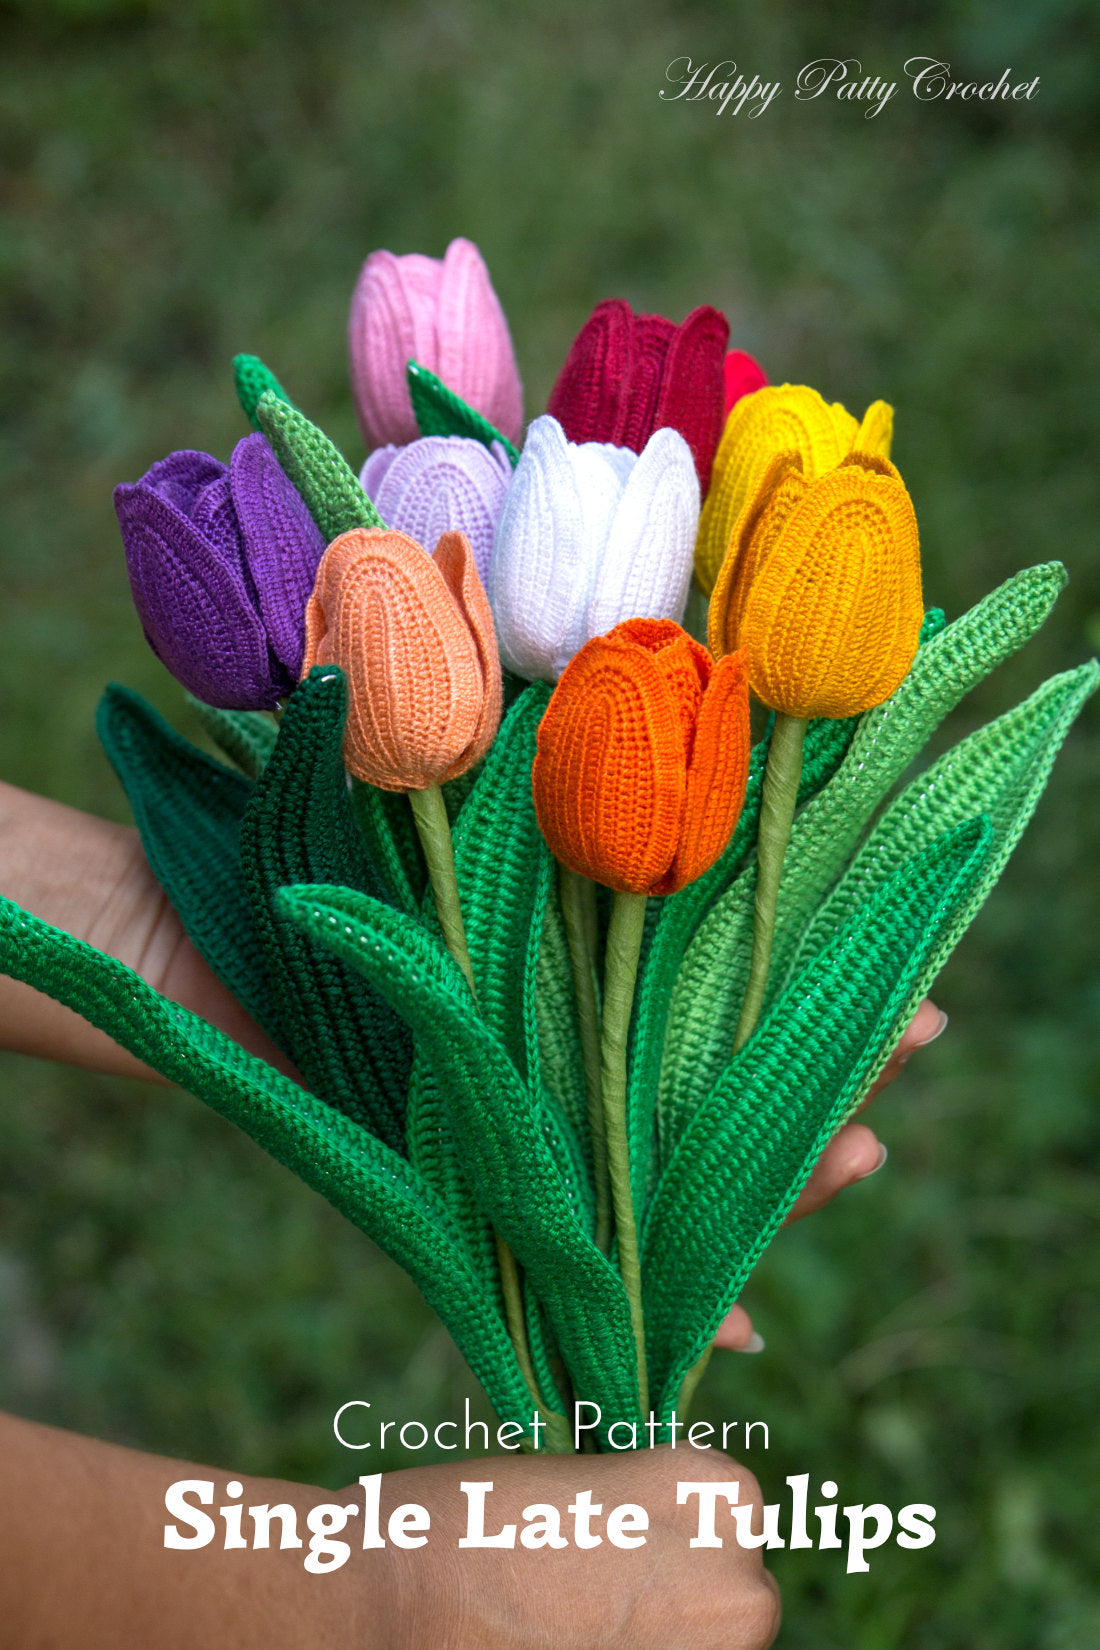 Crochet Single Late Tulip Pattern by Happy Patty Crochet